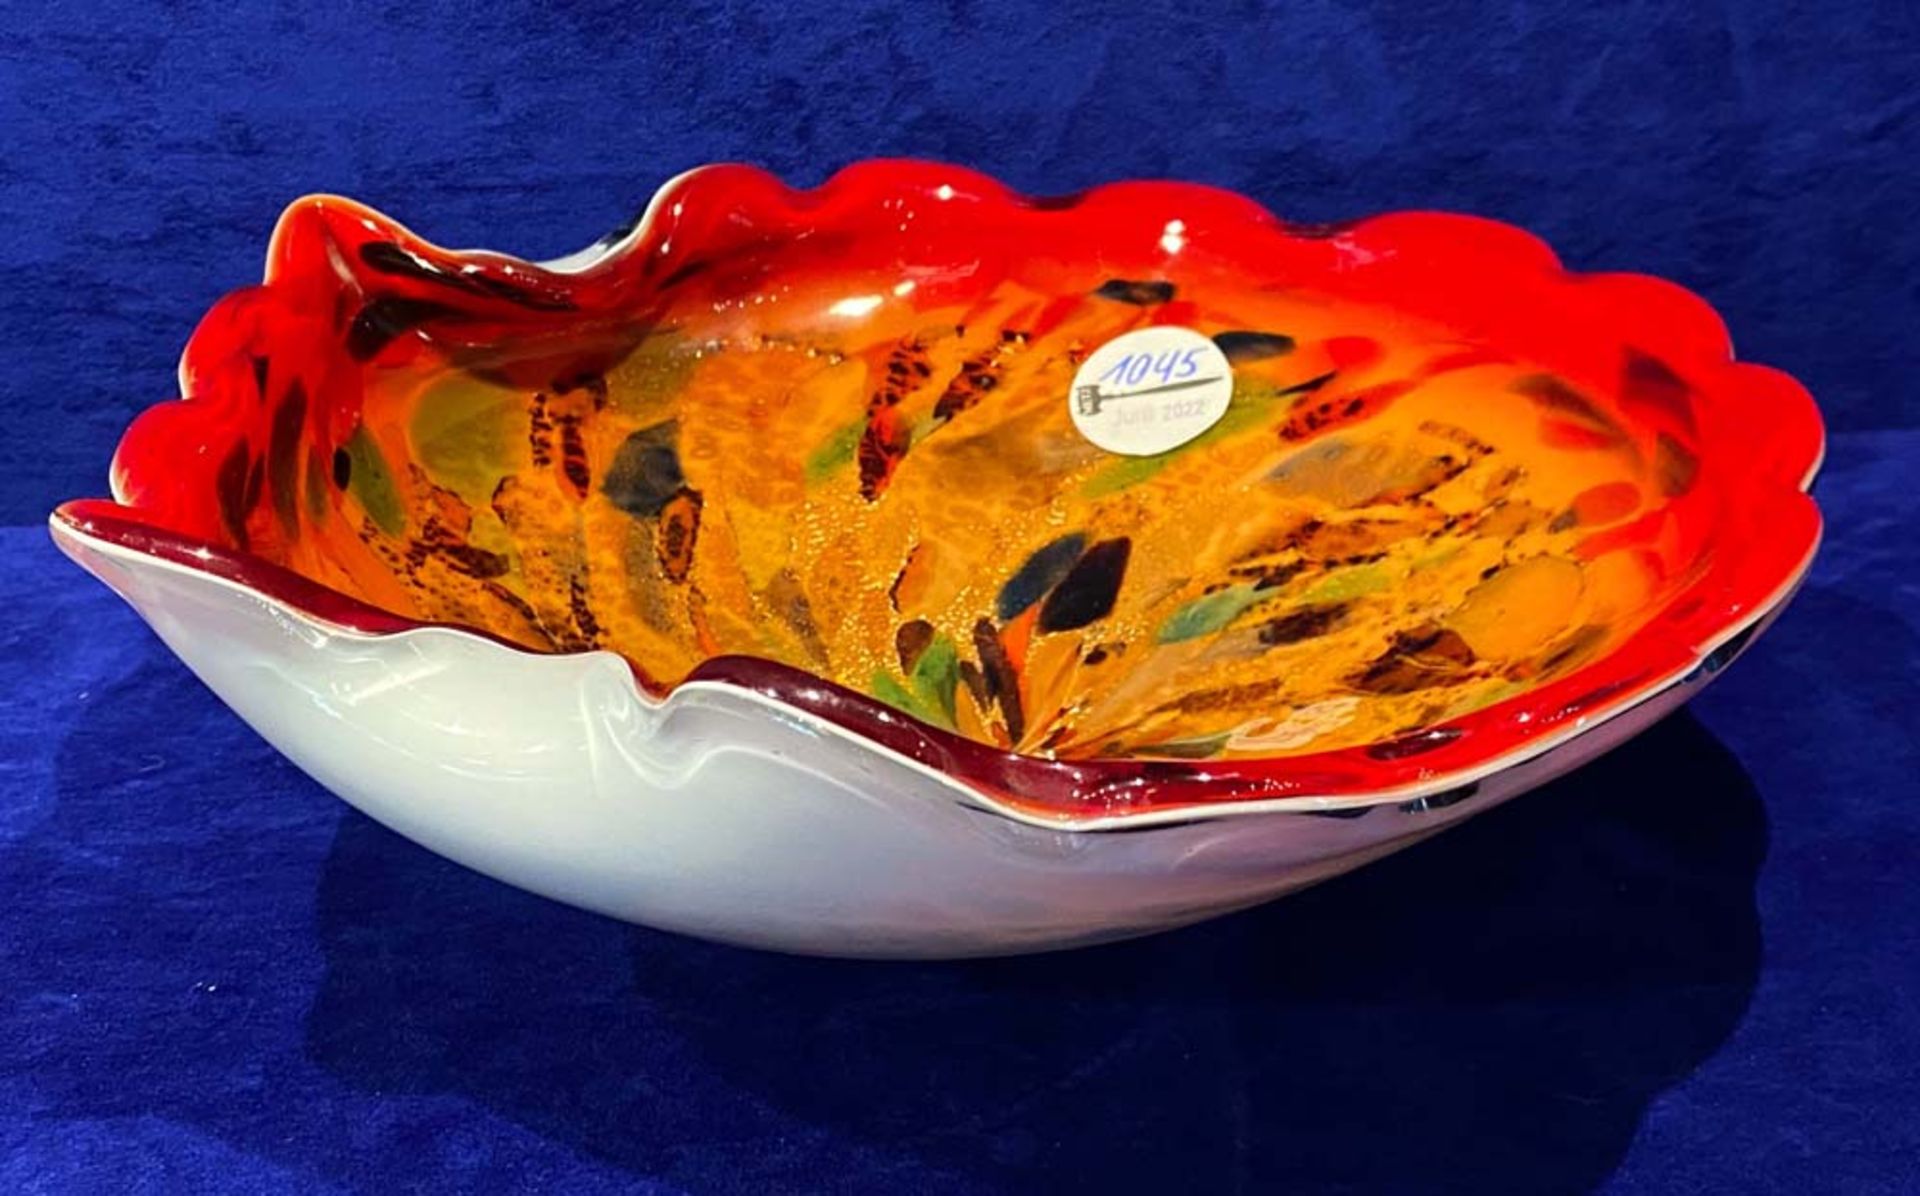 Muschelschale. Murano 1950er Jahre. Farbloses Glas, mehrfach überfangen mit Kupferpulver-